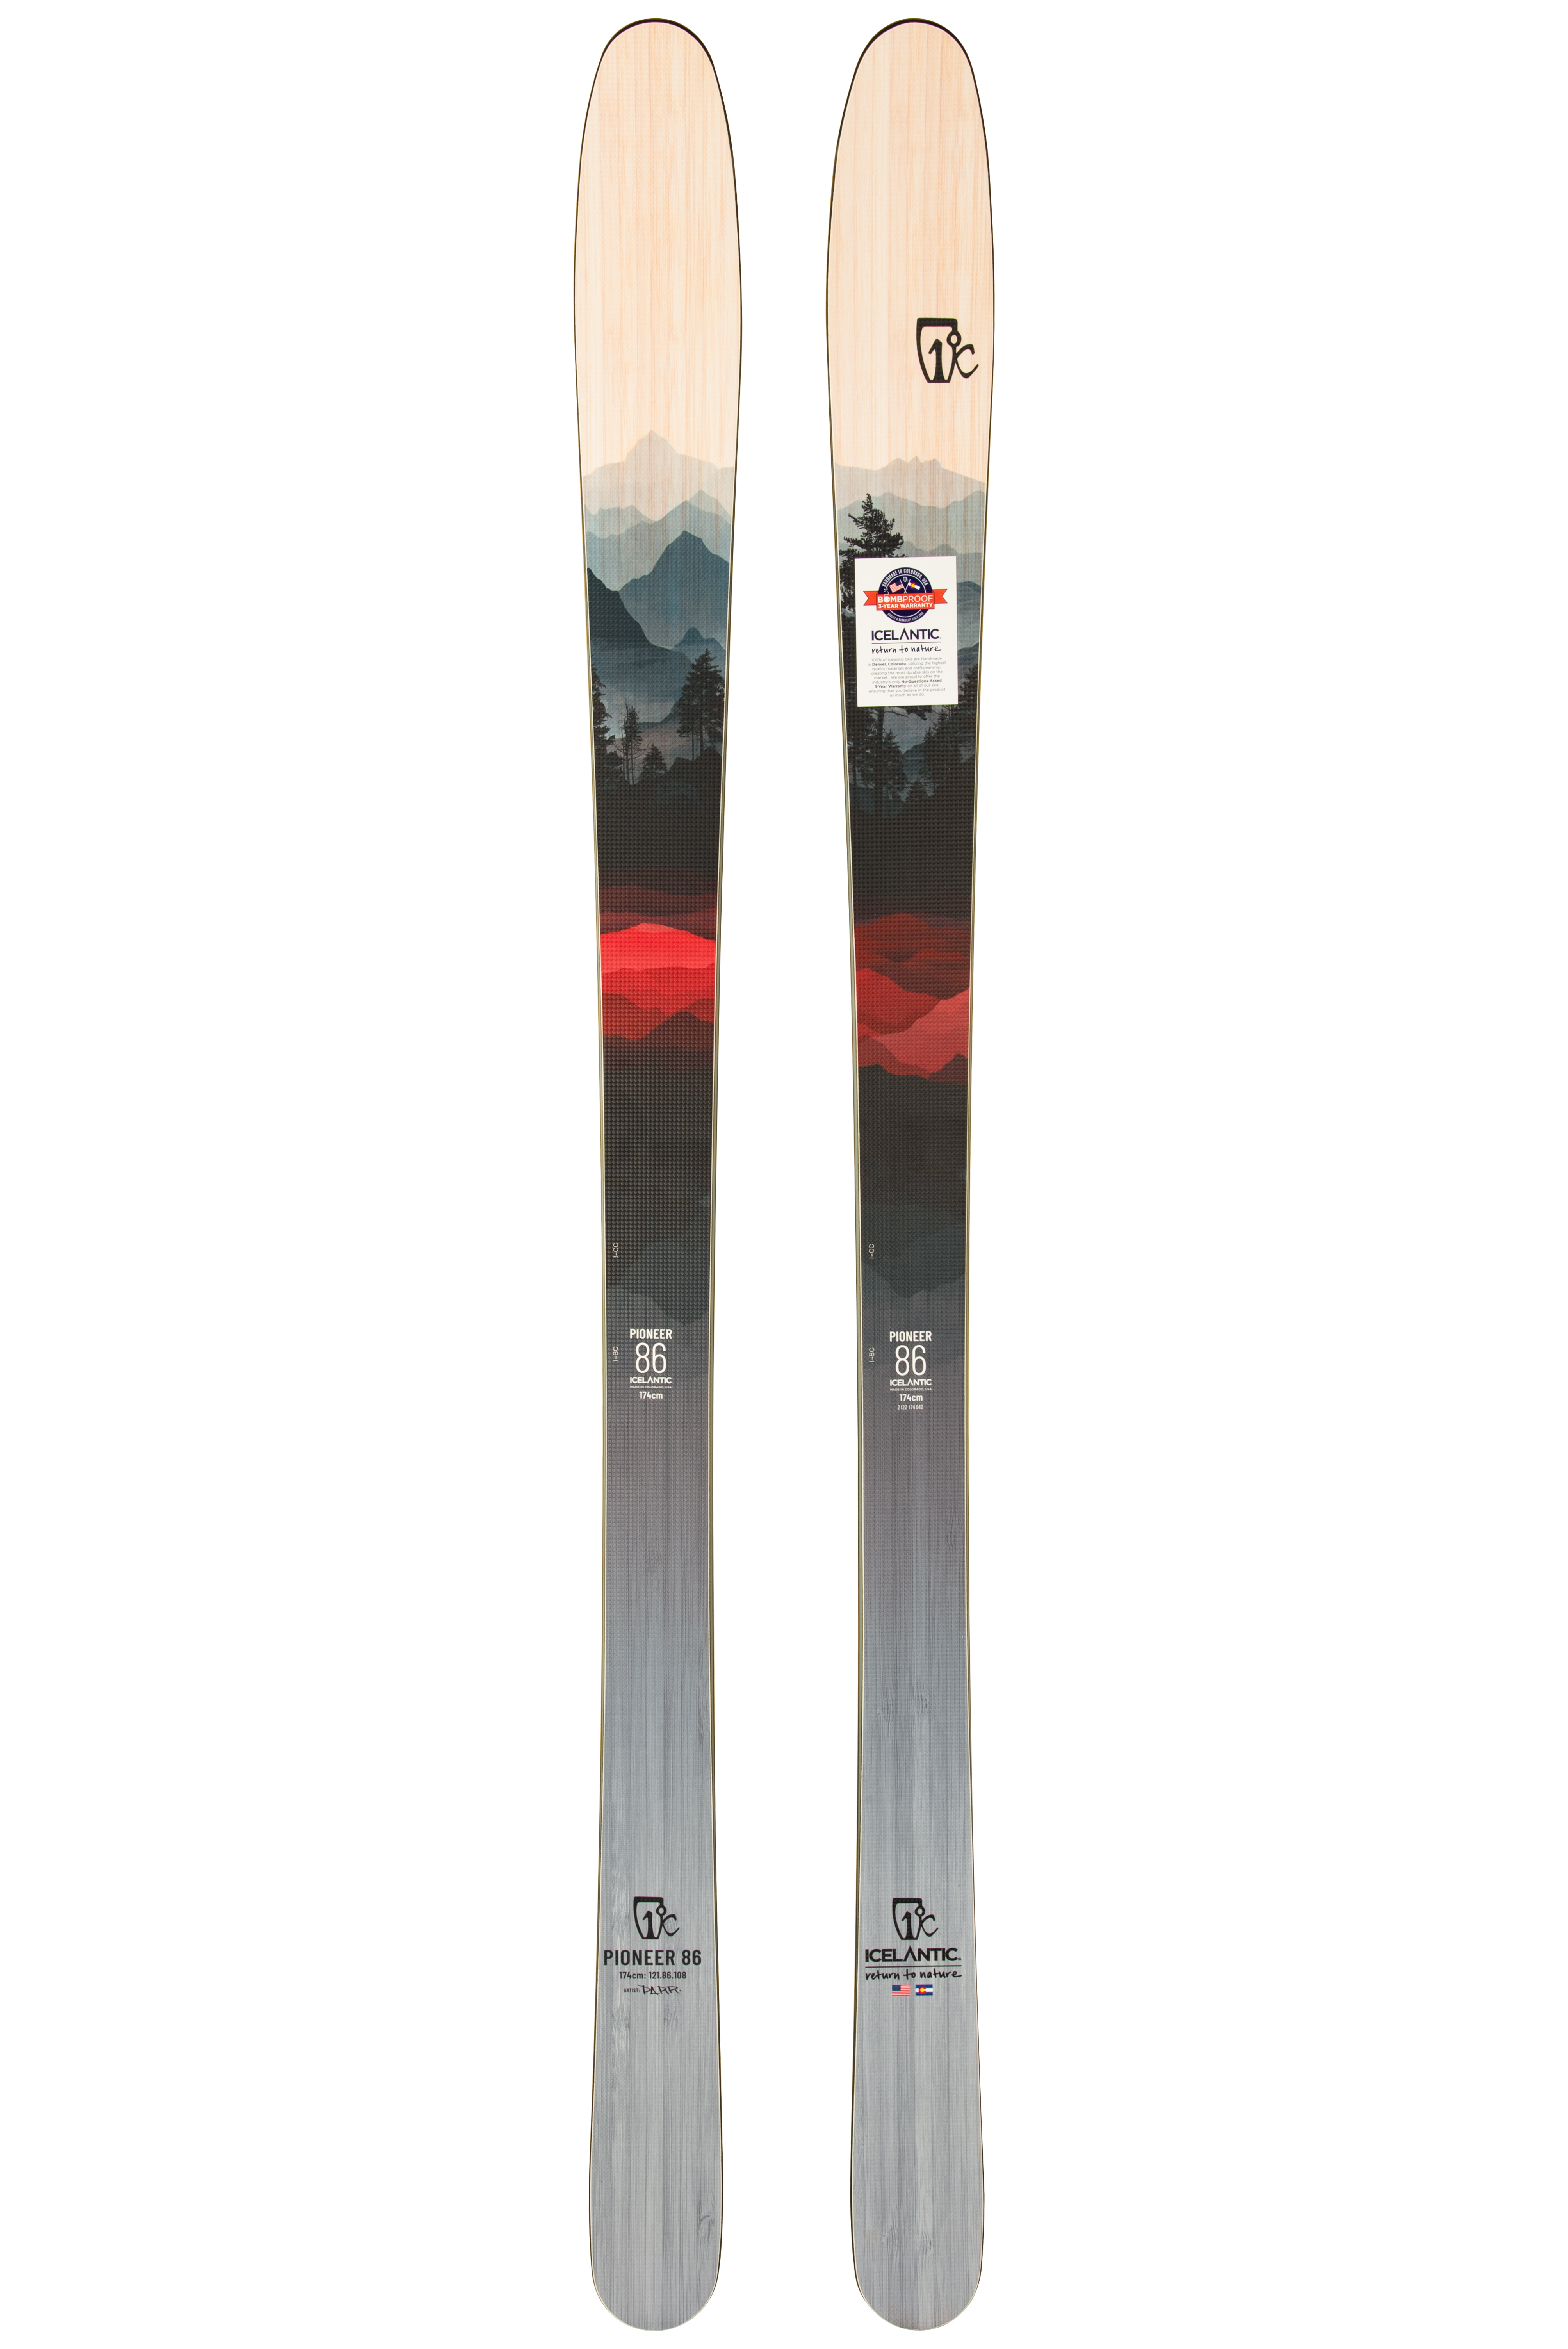 Мужские лыжи Icelantic Pioneer 86 2021/2022 174cm